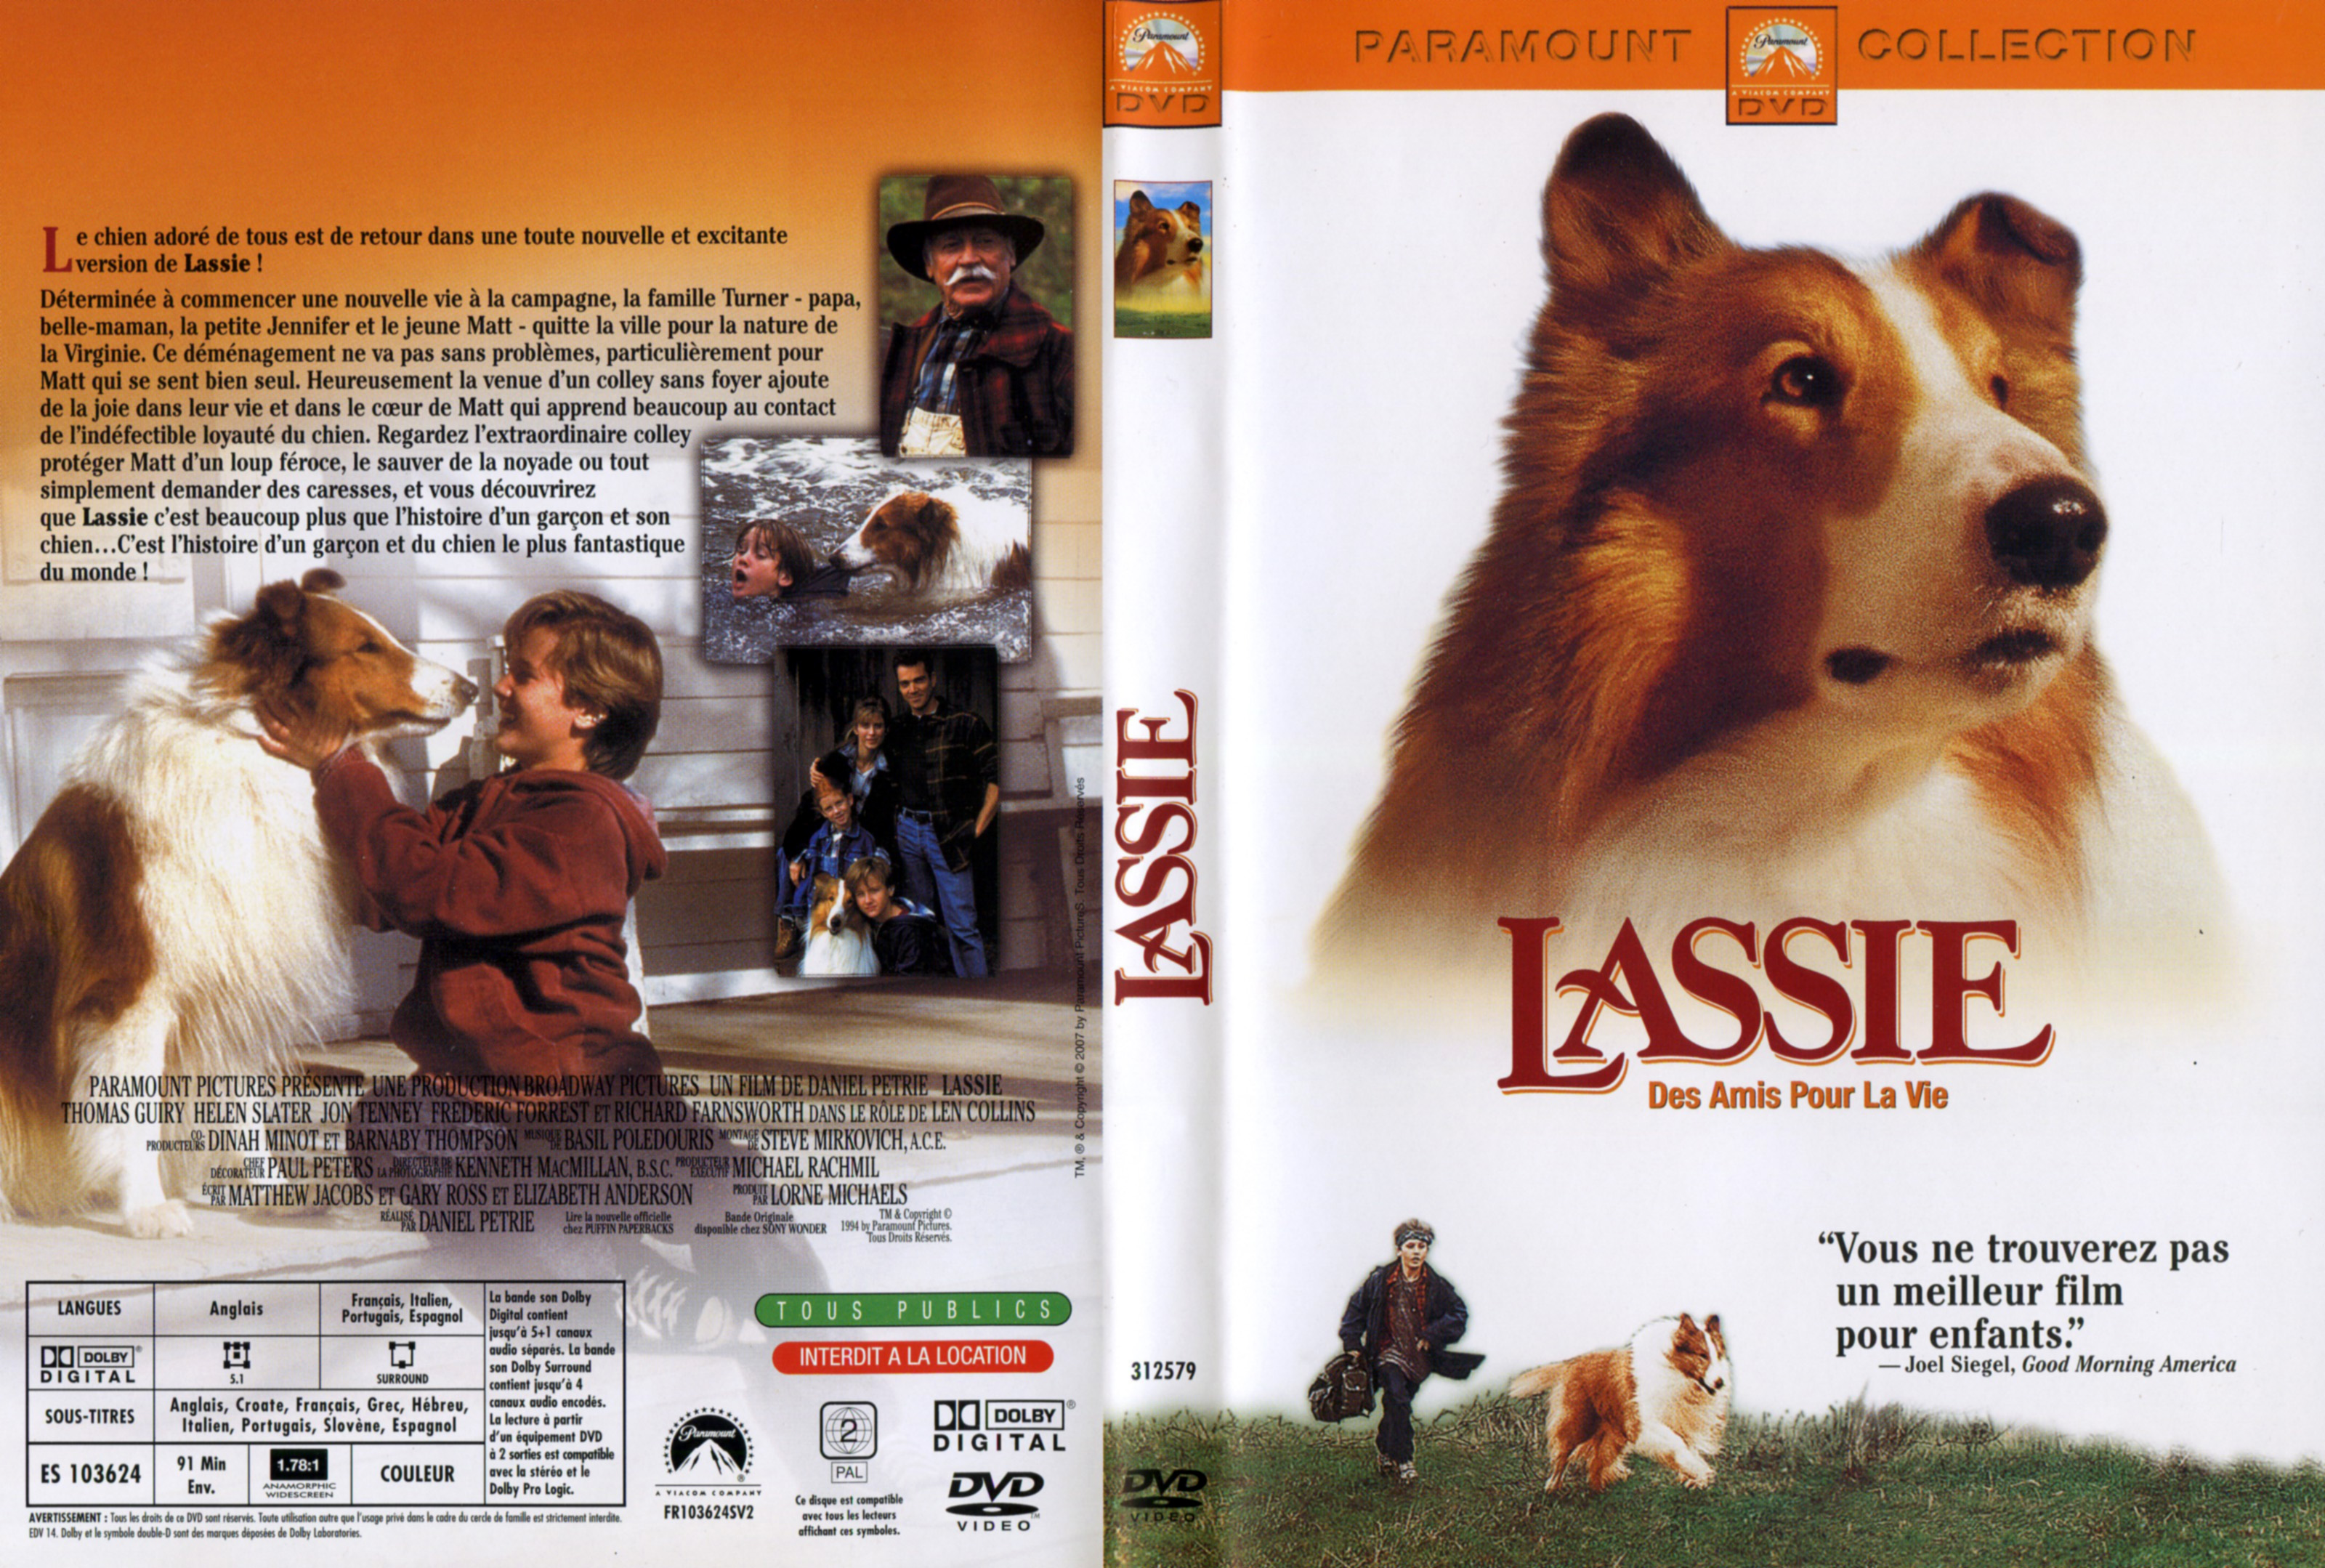 Jaquette DVD Lassie - Des amis pour la vie